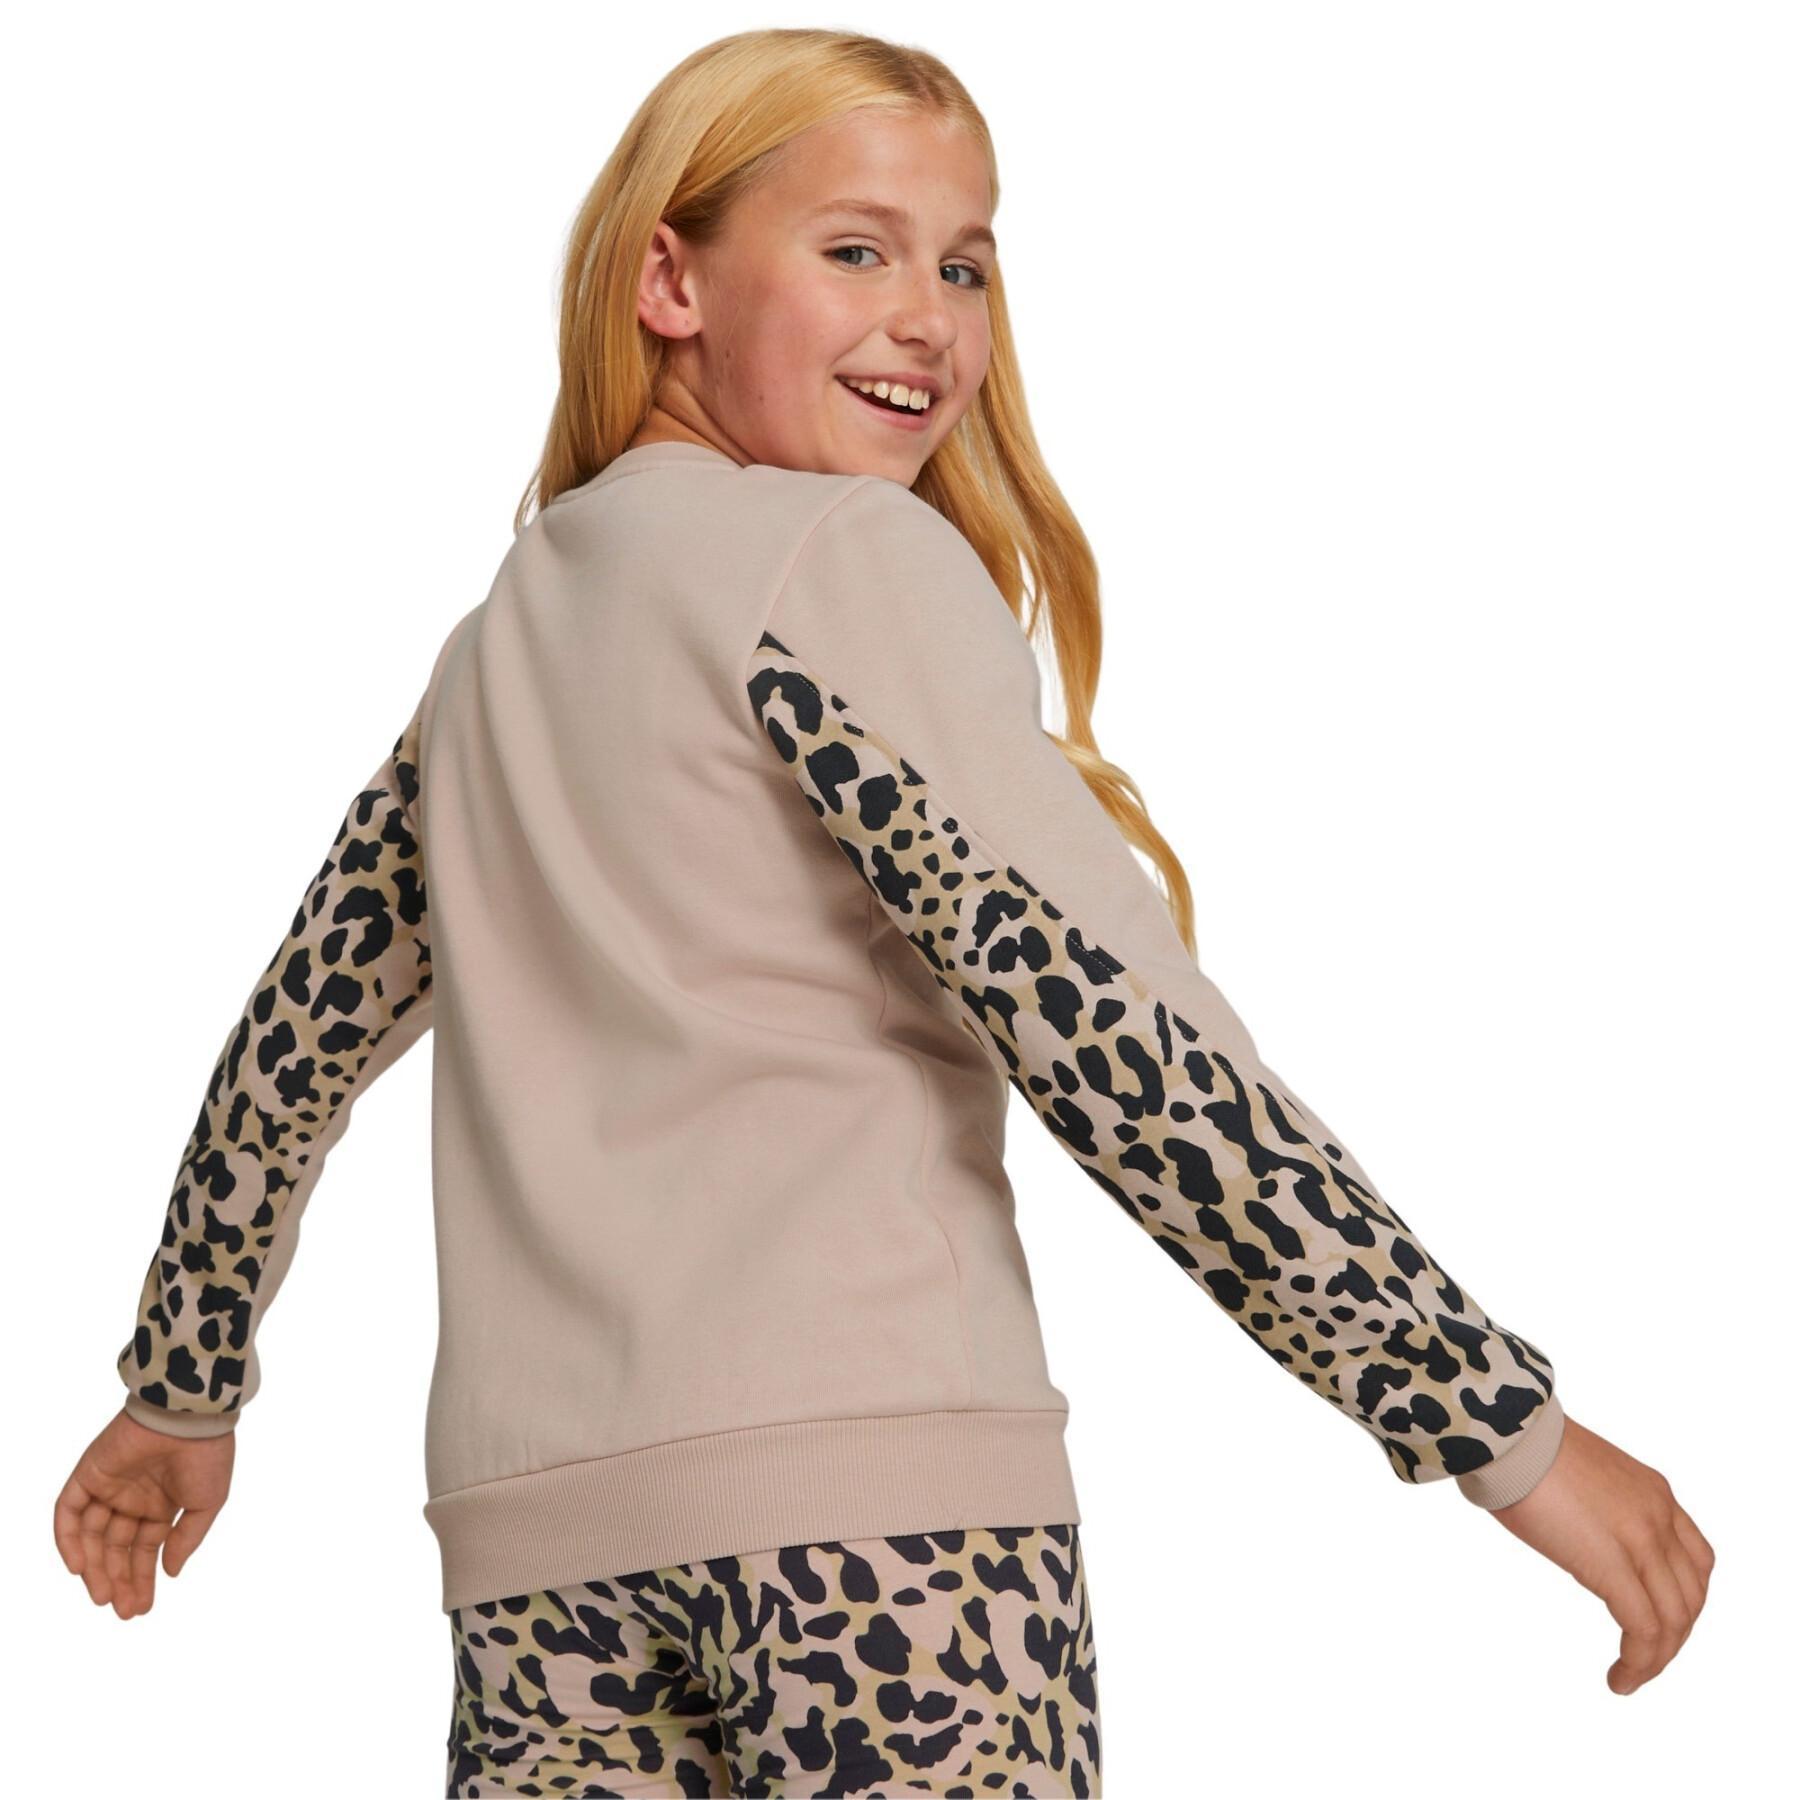 Camisola de pescoço redondo de rapariga Puma Alpha FL G